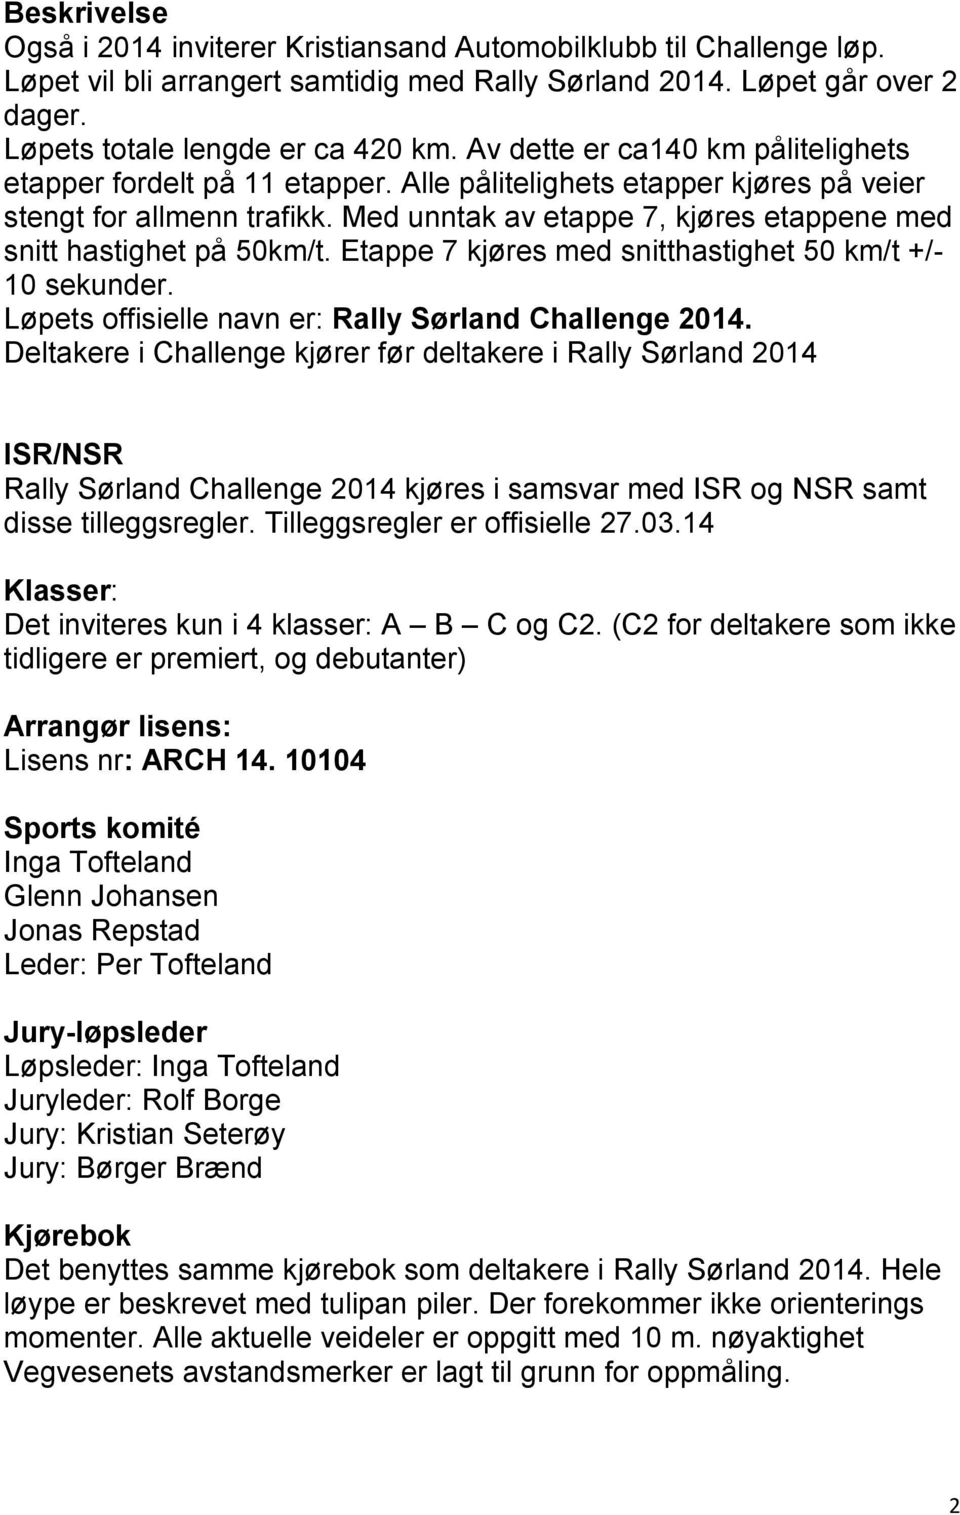 Med unntak av etappe 7, kjøres etappene med snitt hastighet på 50km/t. Etappe 7 kjøres med snitthastighet 50 km/t +/- 10 sekunder. Løpets offisielle navn er: Rally Sørland Challenge 2014.